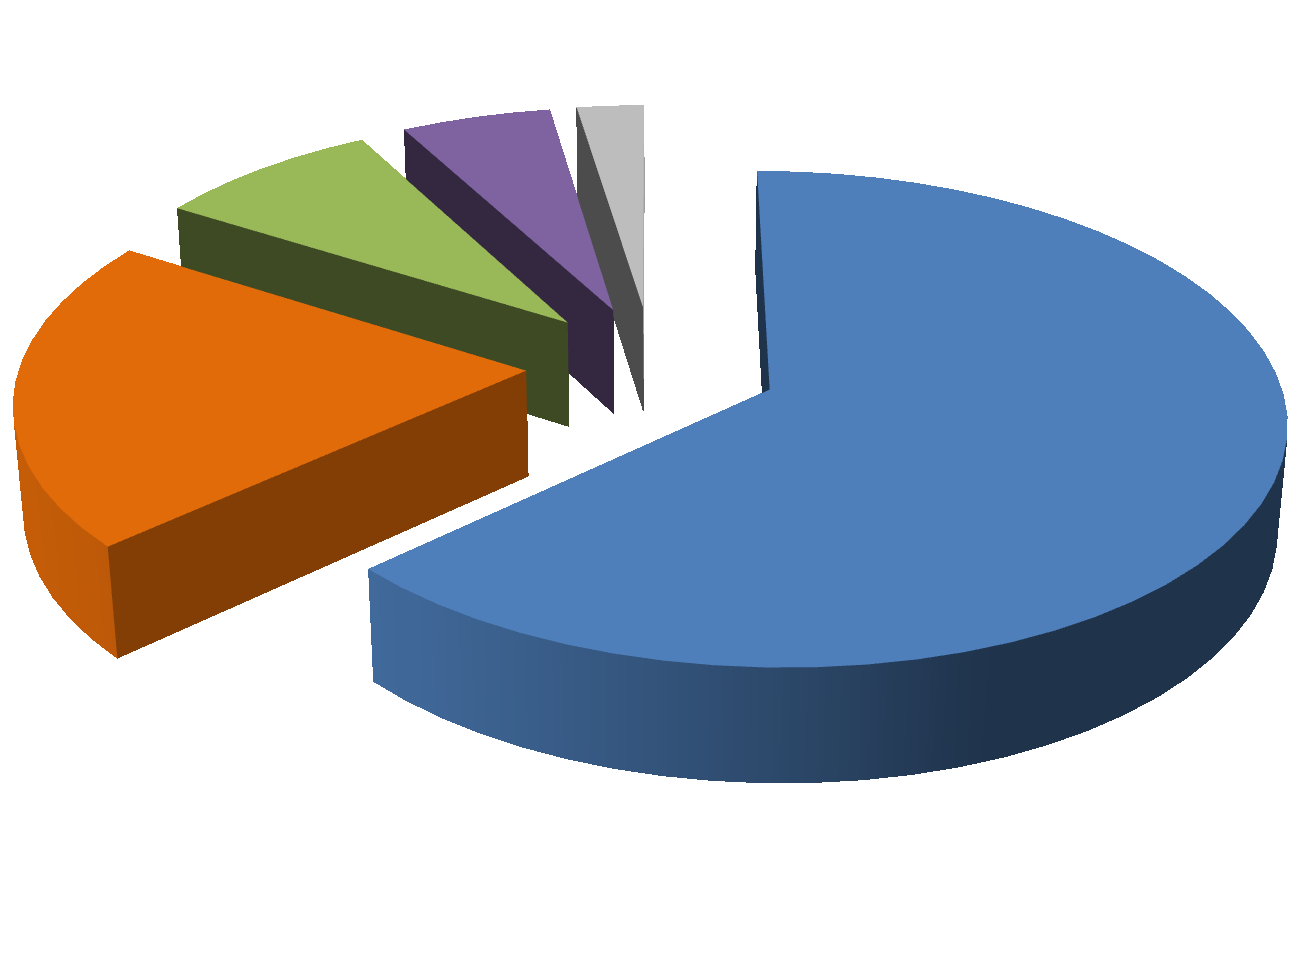 Perfil dos Contratos de Repasse por Valor (R$ mil) 2% 8% 5% 21% 63% 92% dos contratos estão abaixo